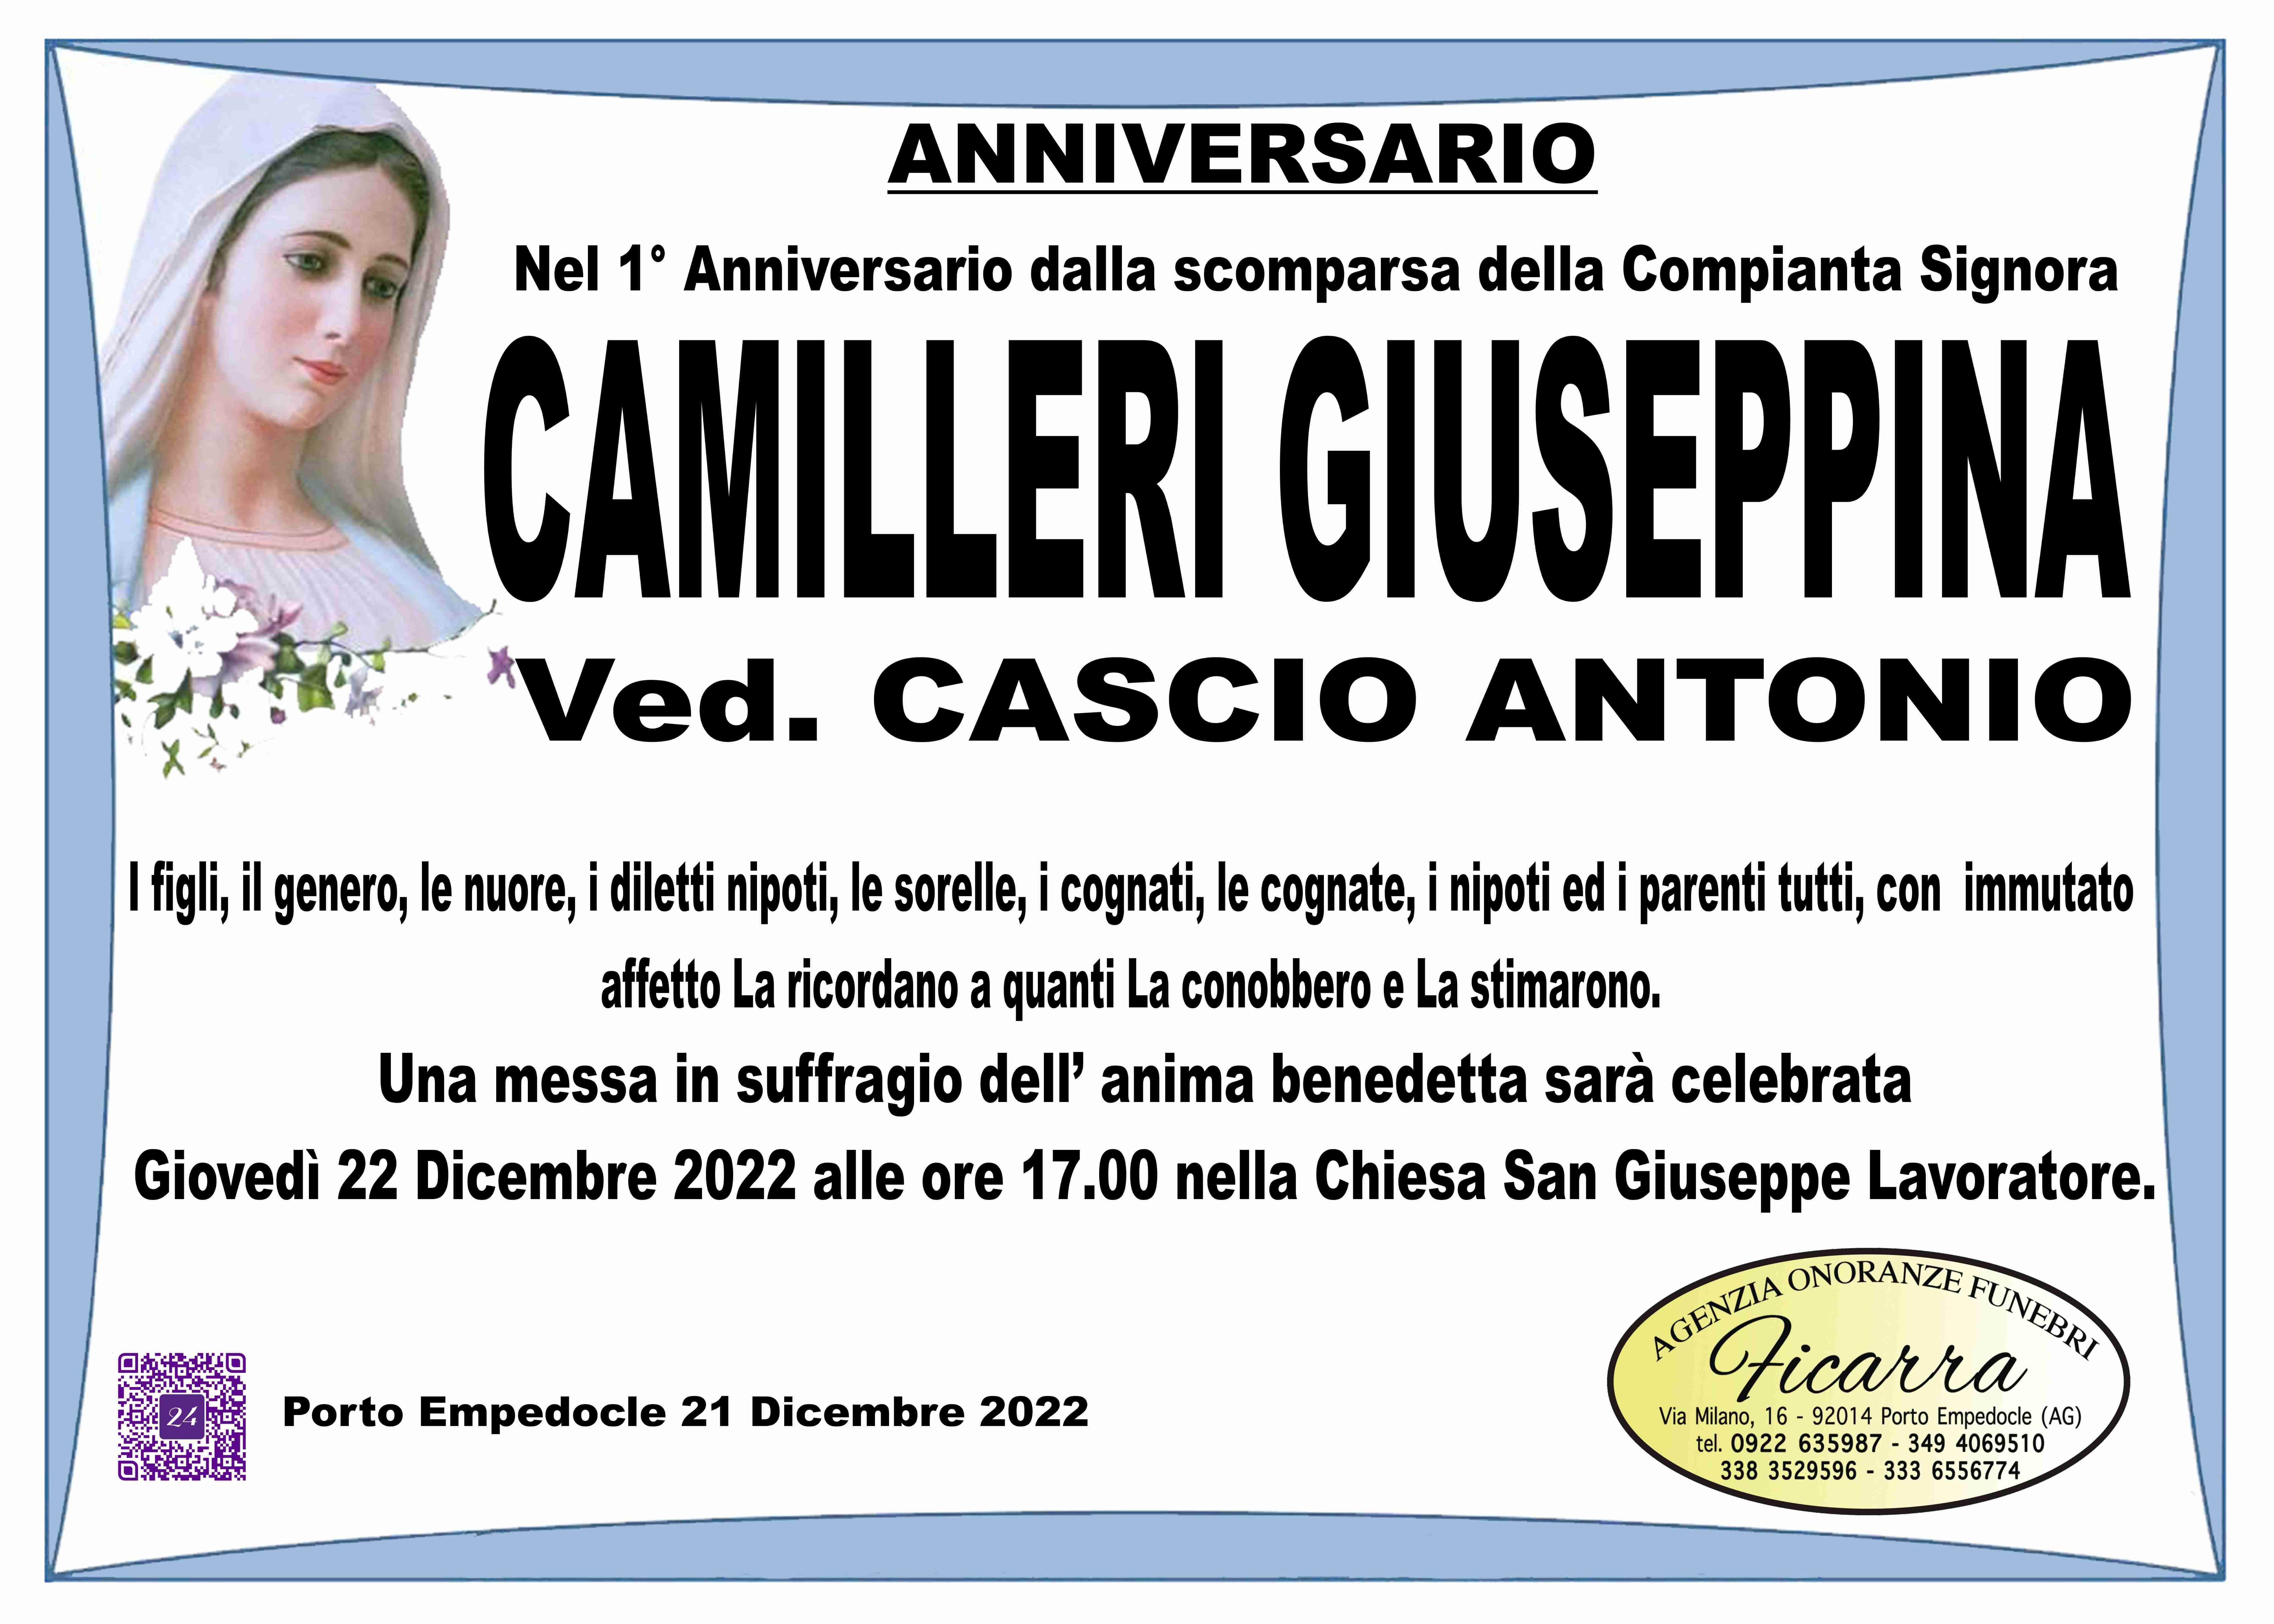 Giuseppina Camilleri